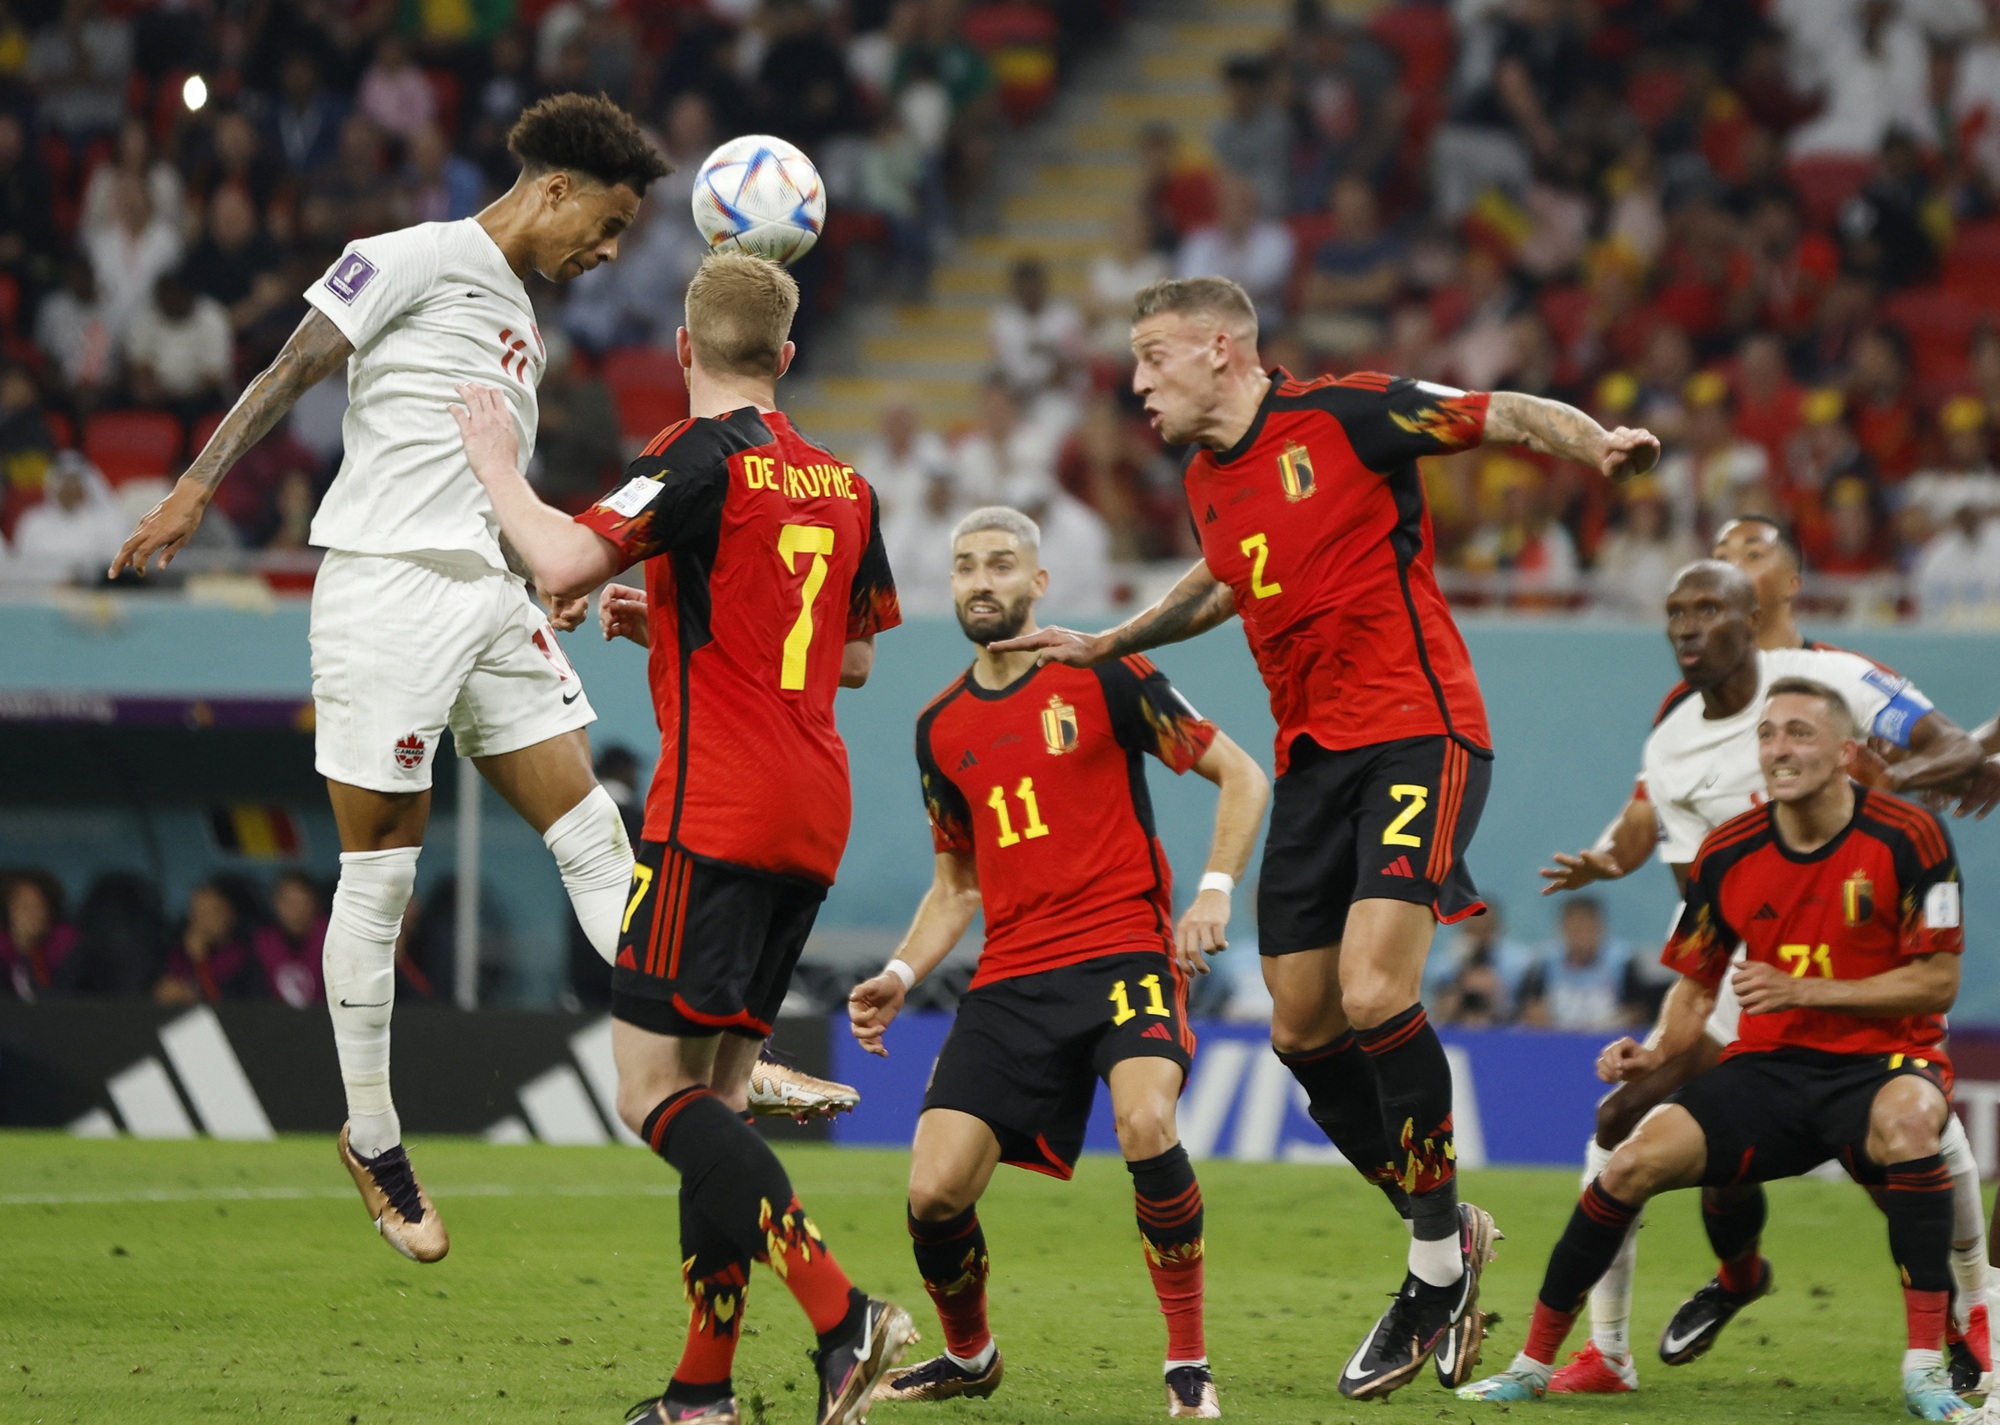 Bỉ - Morocco: Chào đón các fan hâm mộ bóng đá, chúng tôi cung cấp những bức ảnh tuyệt vời về trận đấu căng thẳng giữa Bỉ và Morocco, với những pha bóng đầy kịch tính và kỹ năng của các cầu thủ, trong một không khí đầy cảm xúc và sôi động. Cùng xem lại những khoảnh khắc ấn tượng của trận đấu này và cảm nhận cảm giác của những tình yêu bóng đá trên khắp thế giới.